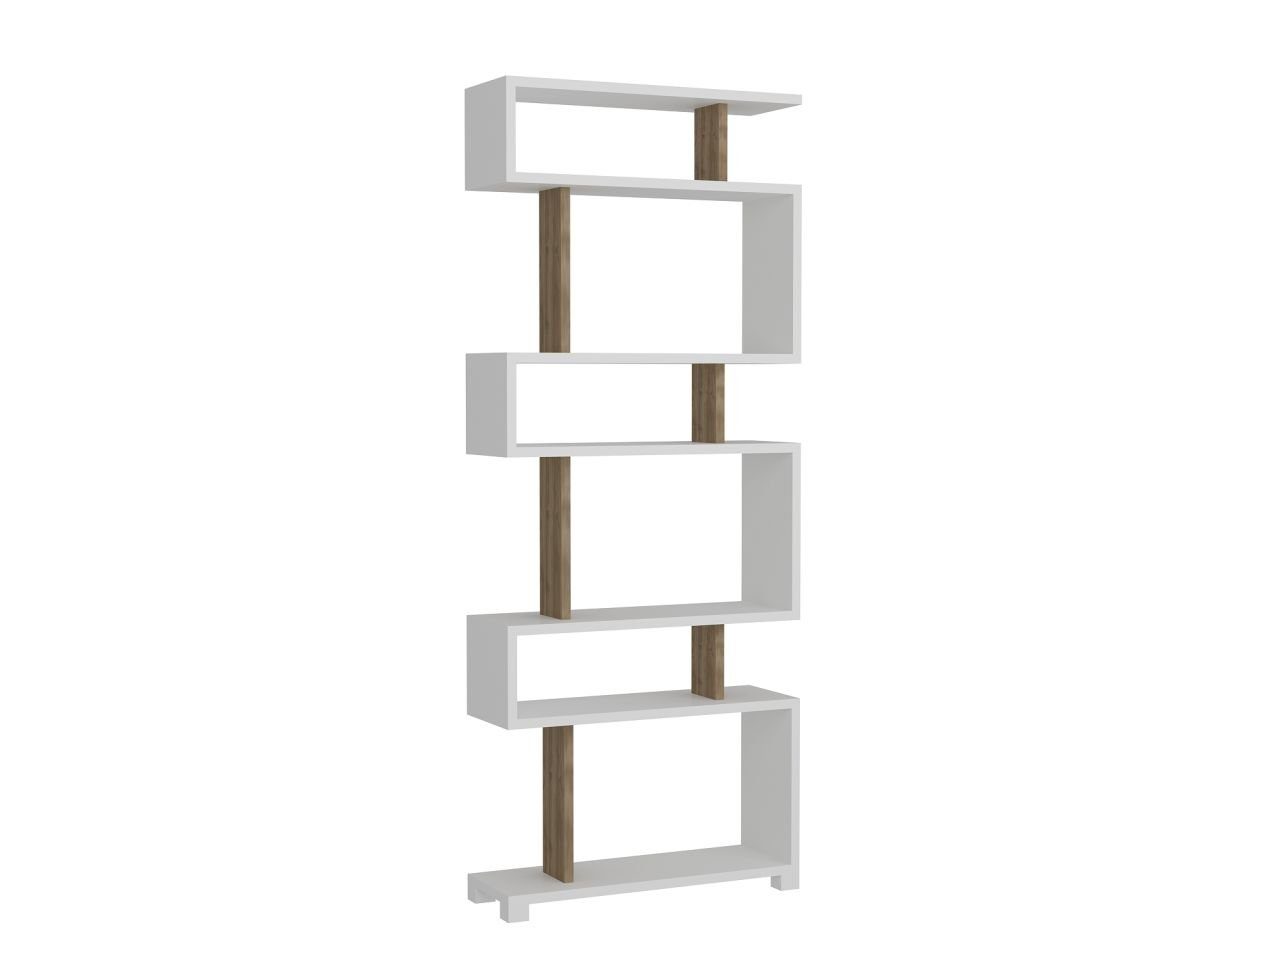 moebel17 Standregal Bücherregal Blok Weiß, mit ausgefallenem Design Weiß Walnuß